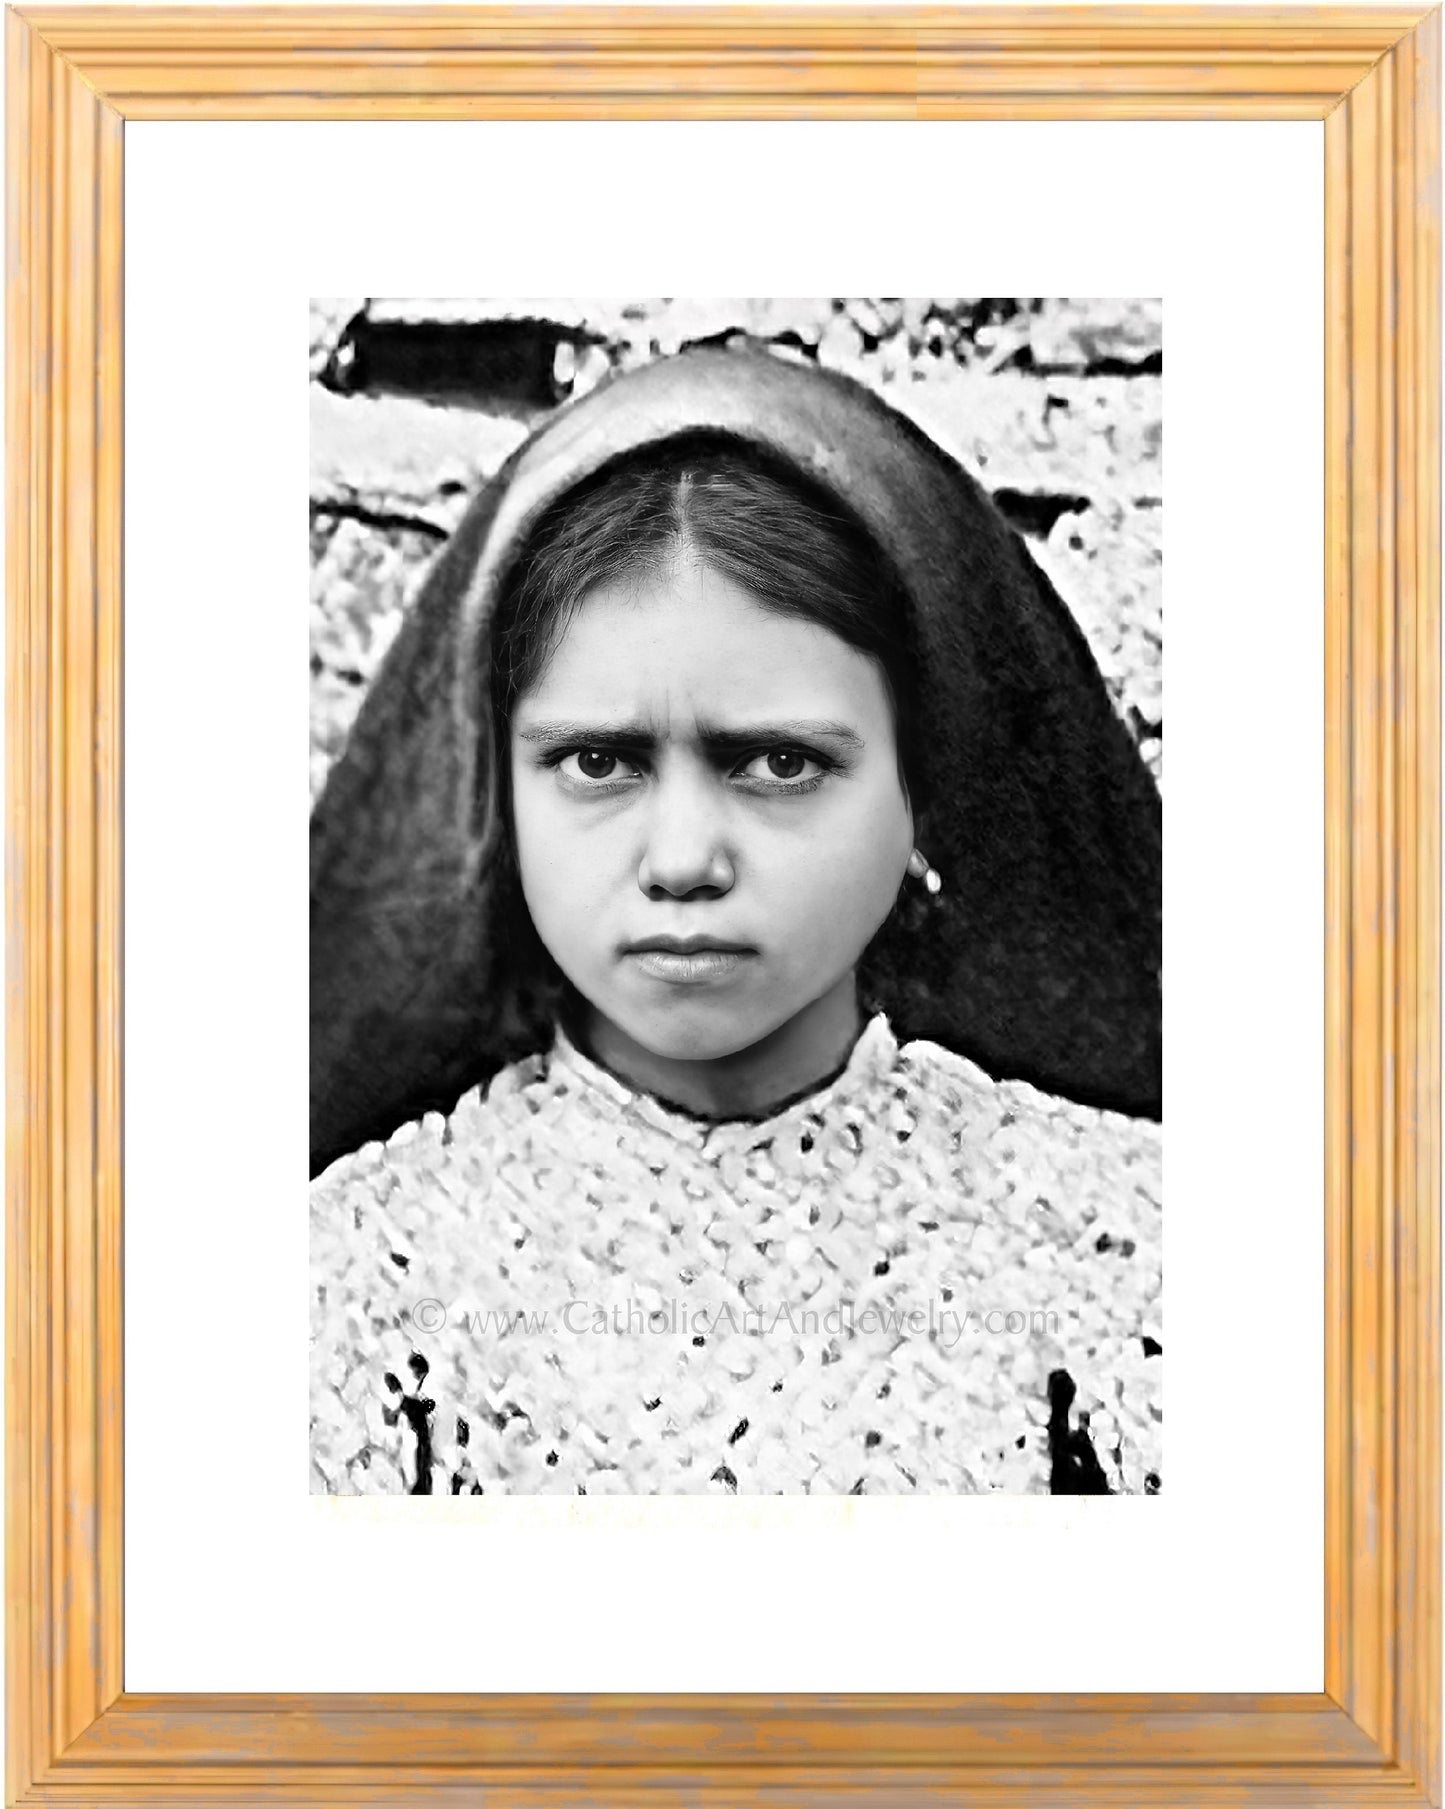 St. Francisco of Fatima - AI Restored Photo! - 3 sizes - Vintage Catholic Art - Archival Quality